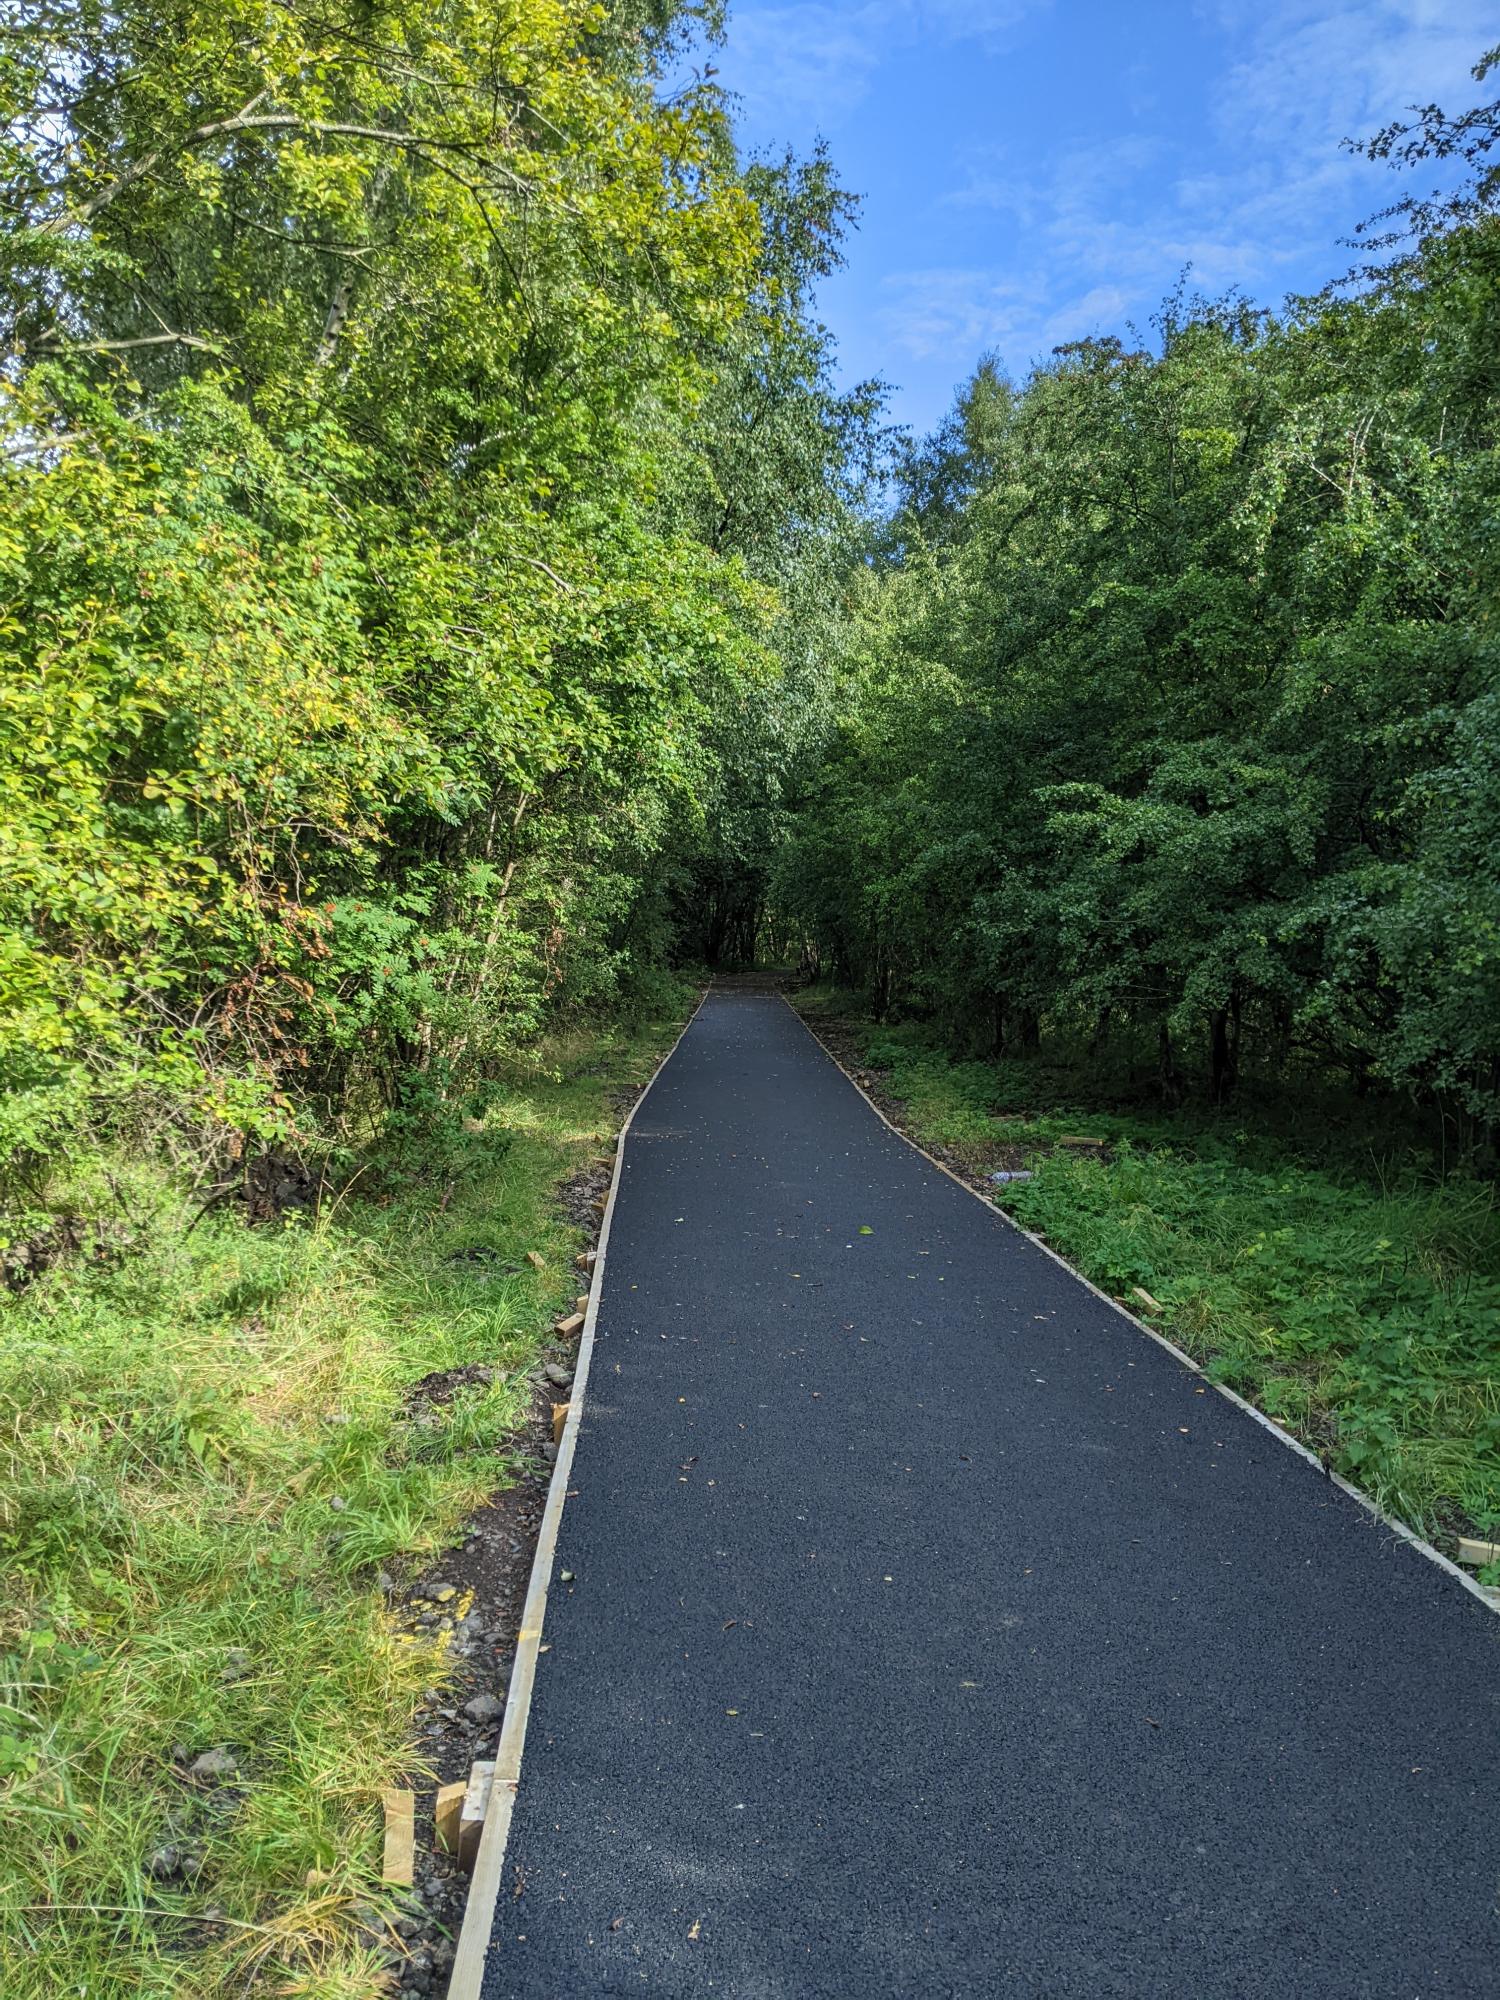 Strathkelvin Railway Path - resurfaced